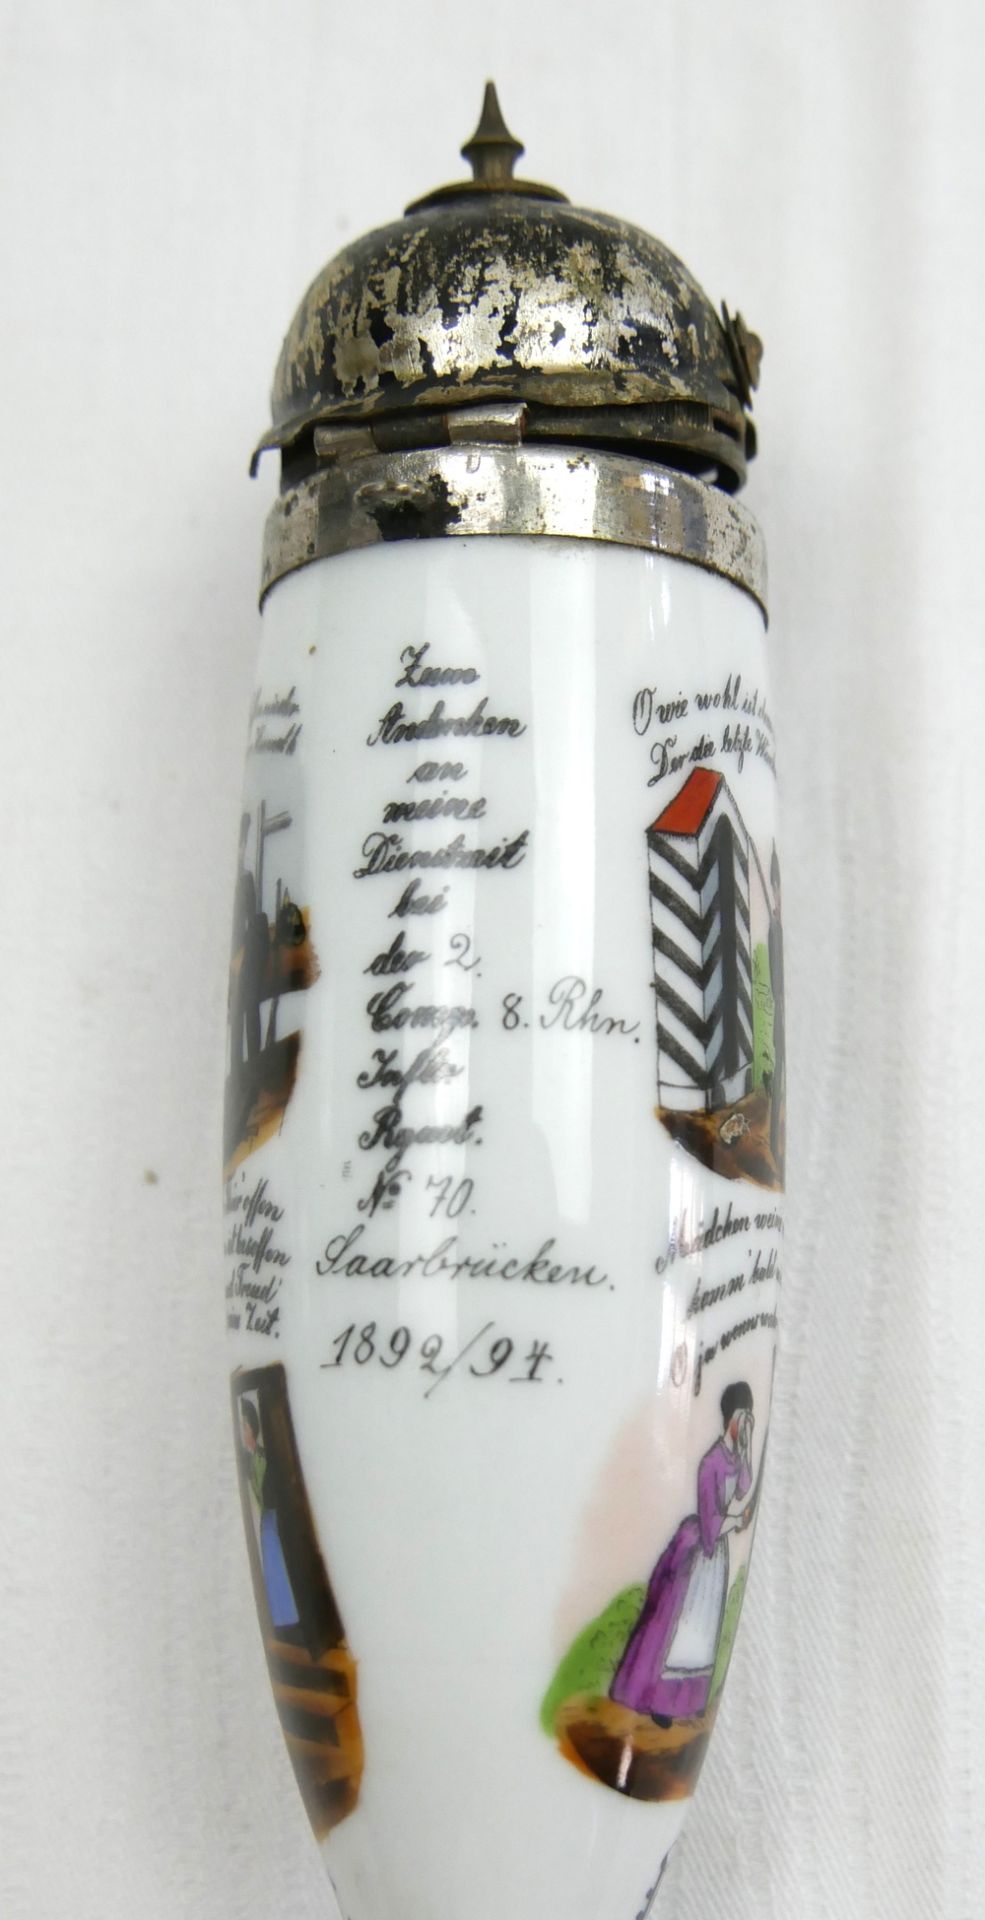 Reservisten-Porzellankopfppfeife mit Pickelhaube, mit Malerei und Text, "Reg. Schneider", bitte - Bild 2 aus 3